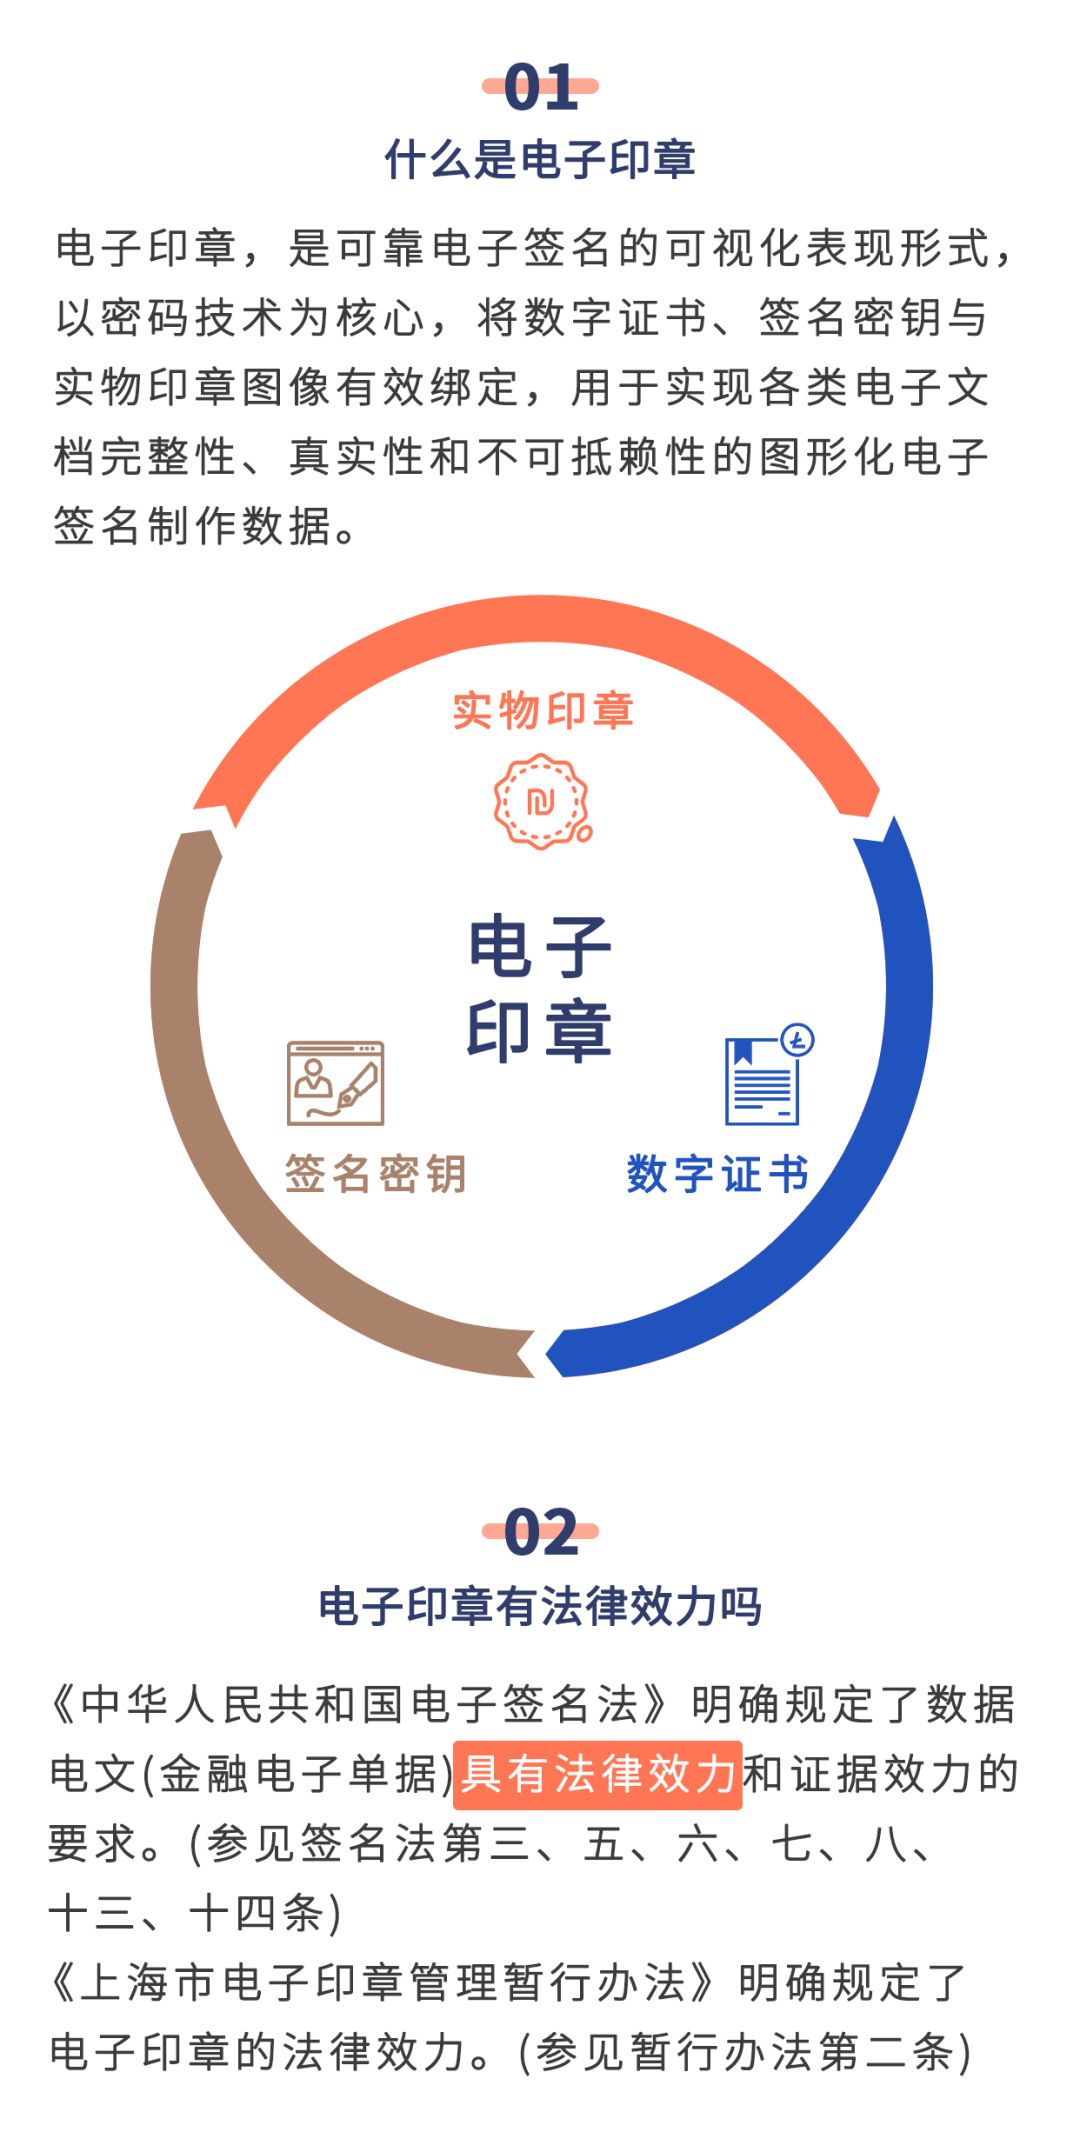 个人用户通过一网通办实名认证,即可登录上海市电子印章公共服务平台